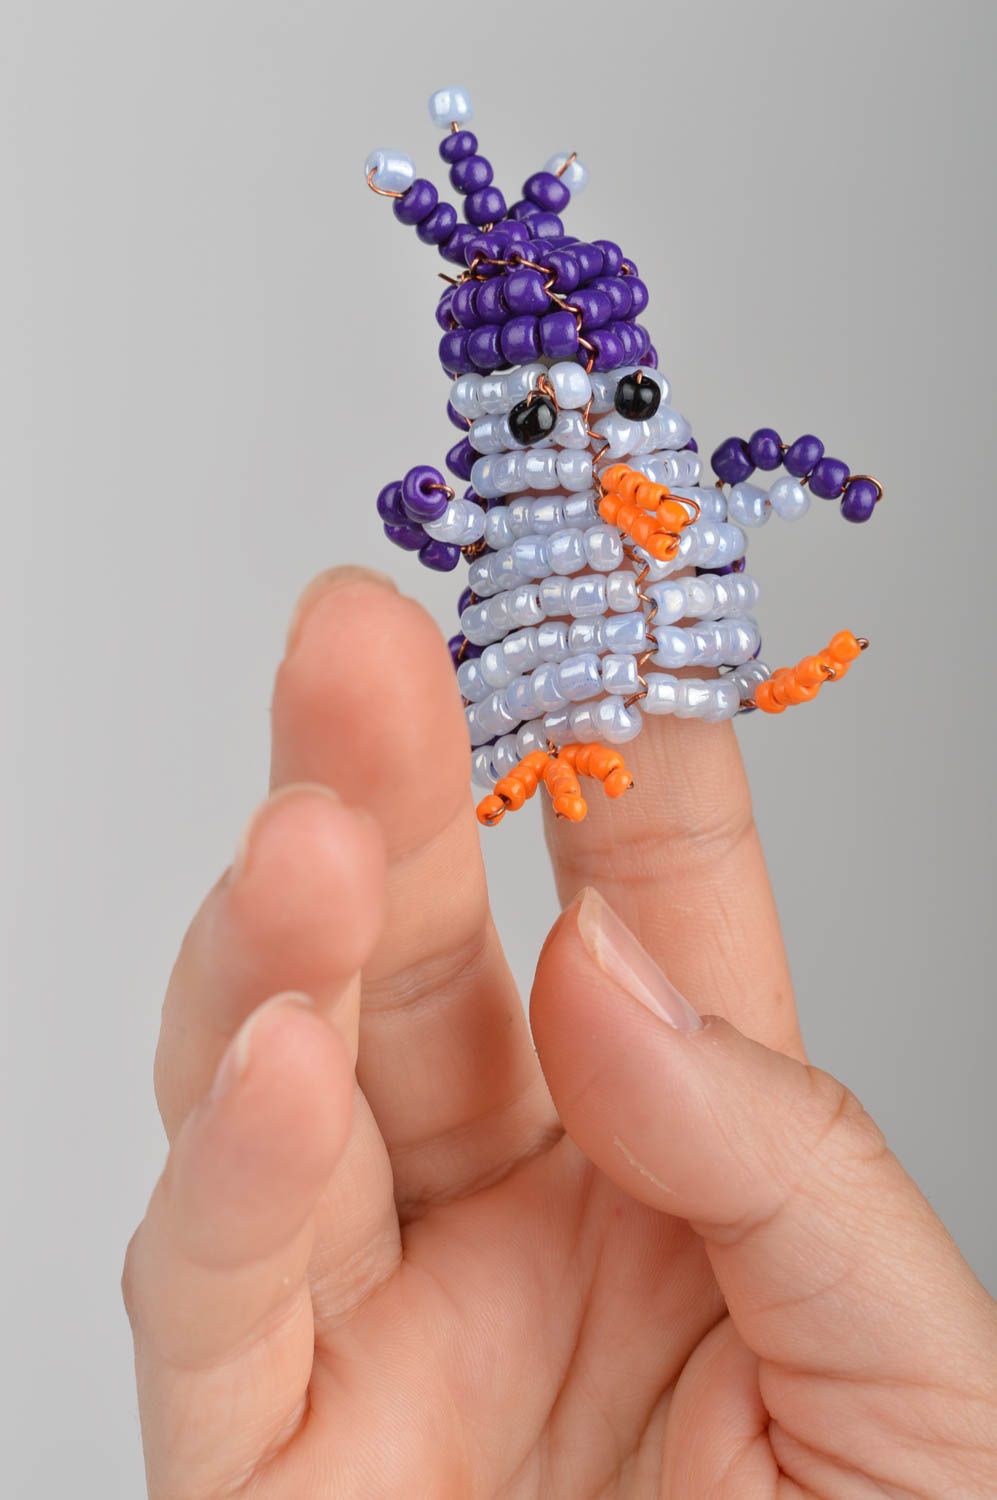 Пальчиковая игрушка пингвин из бисера маленькая синяя смешная ручной работы фото 1